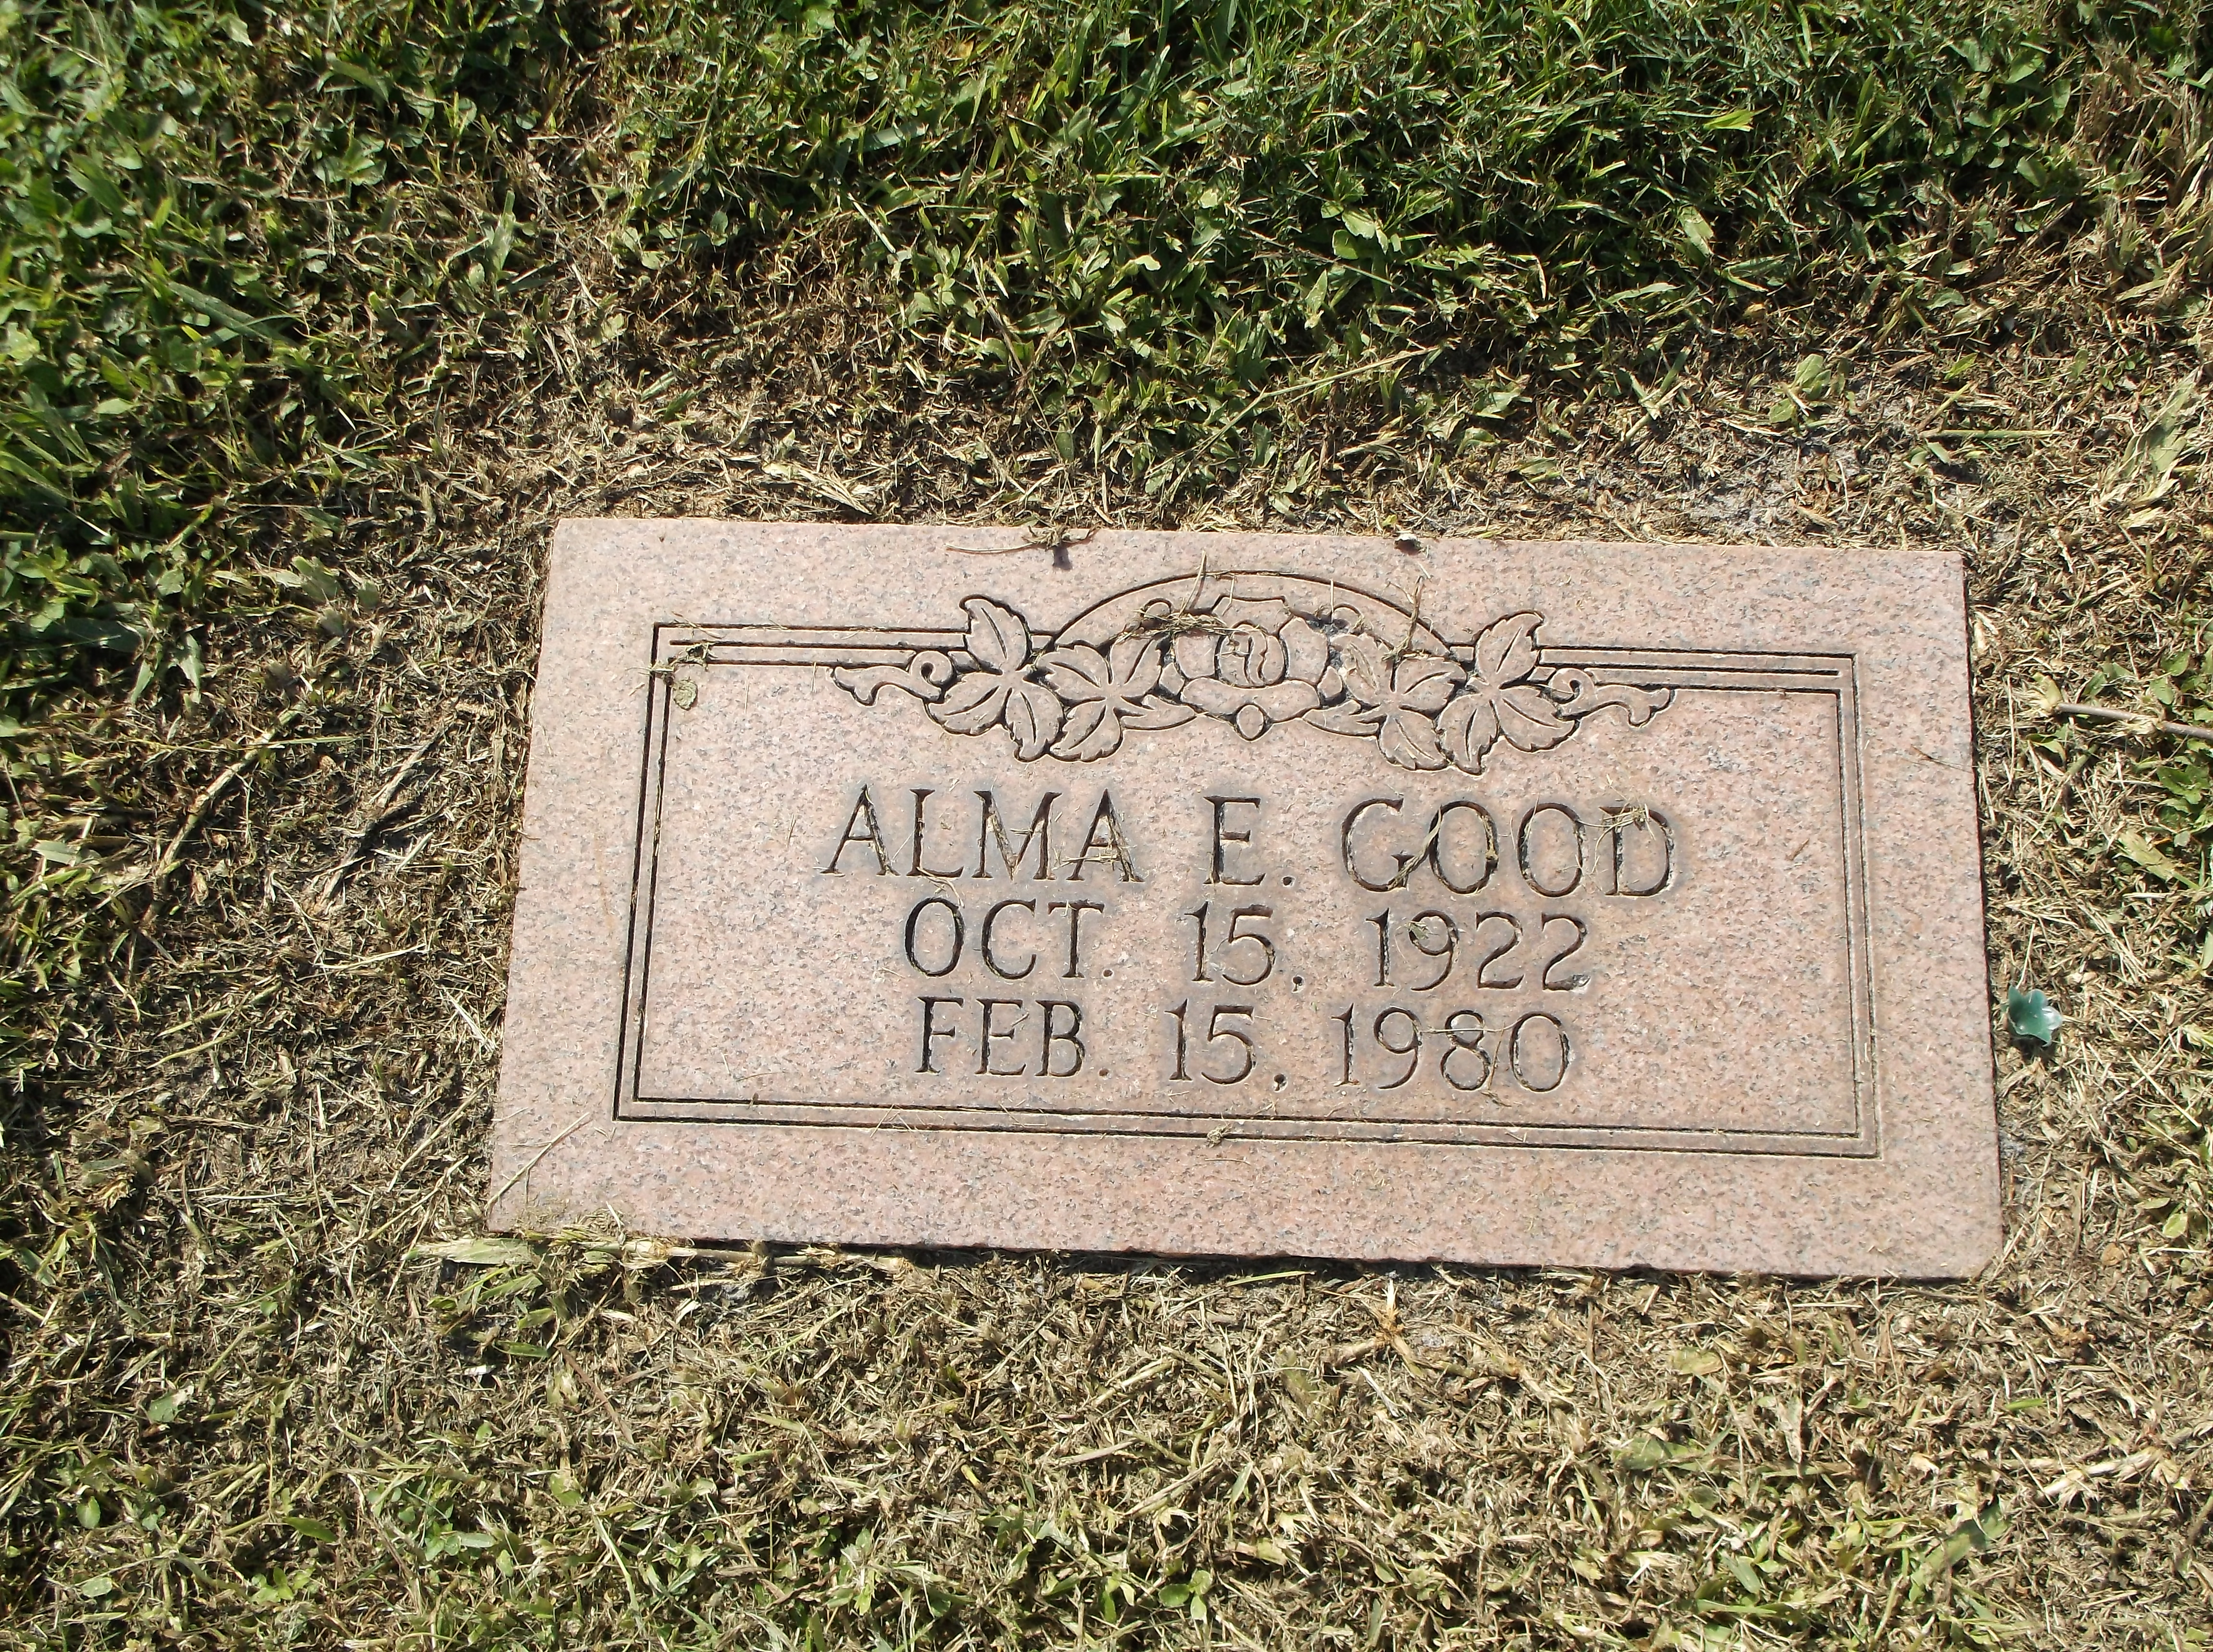 Alma E Good